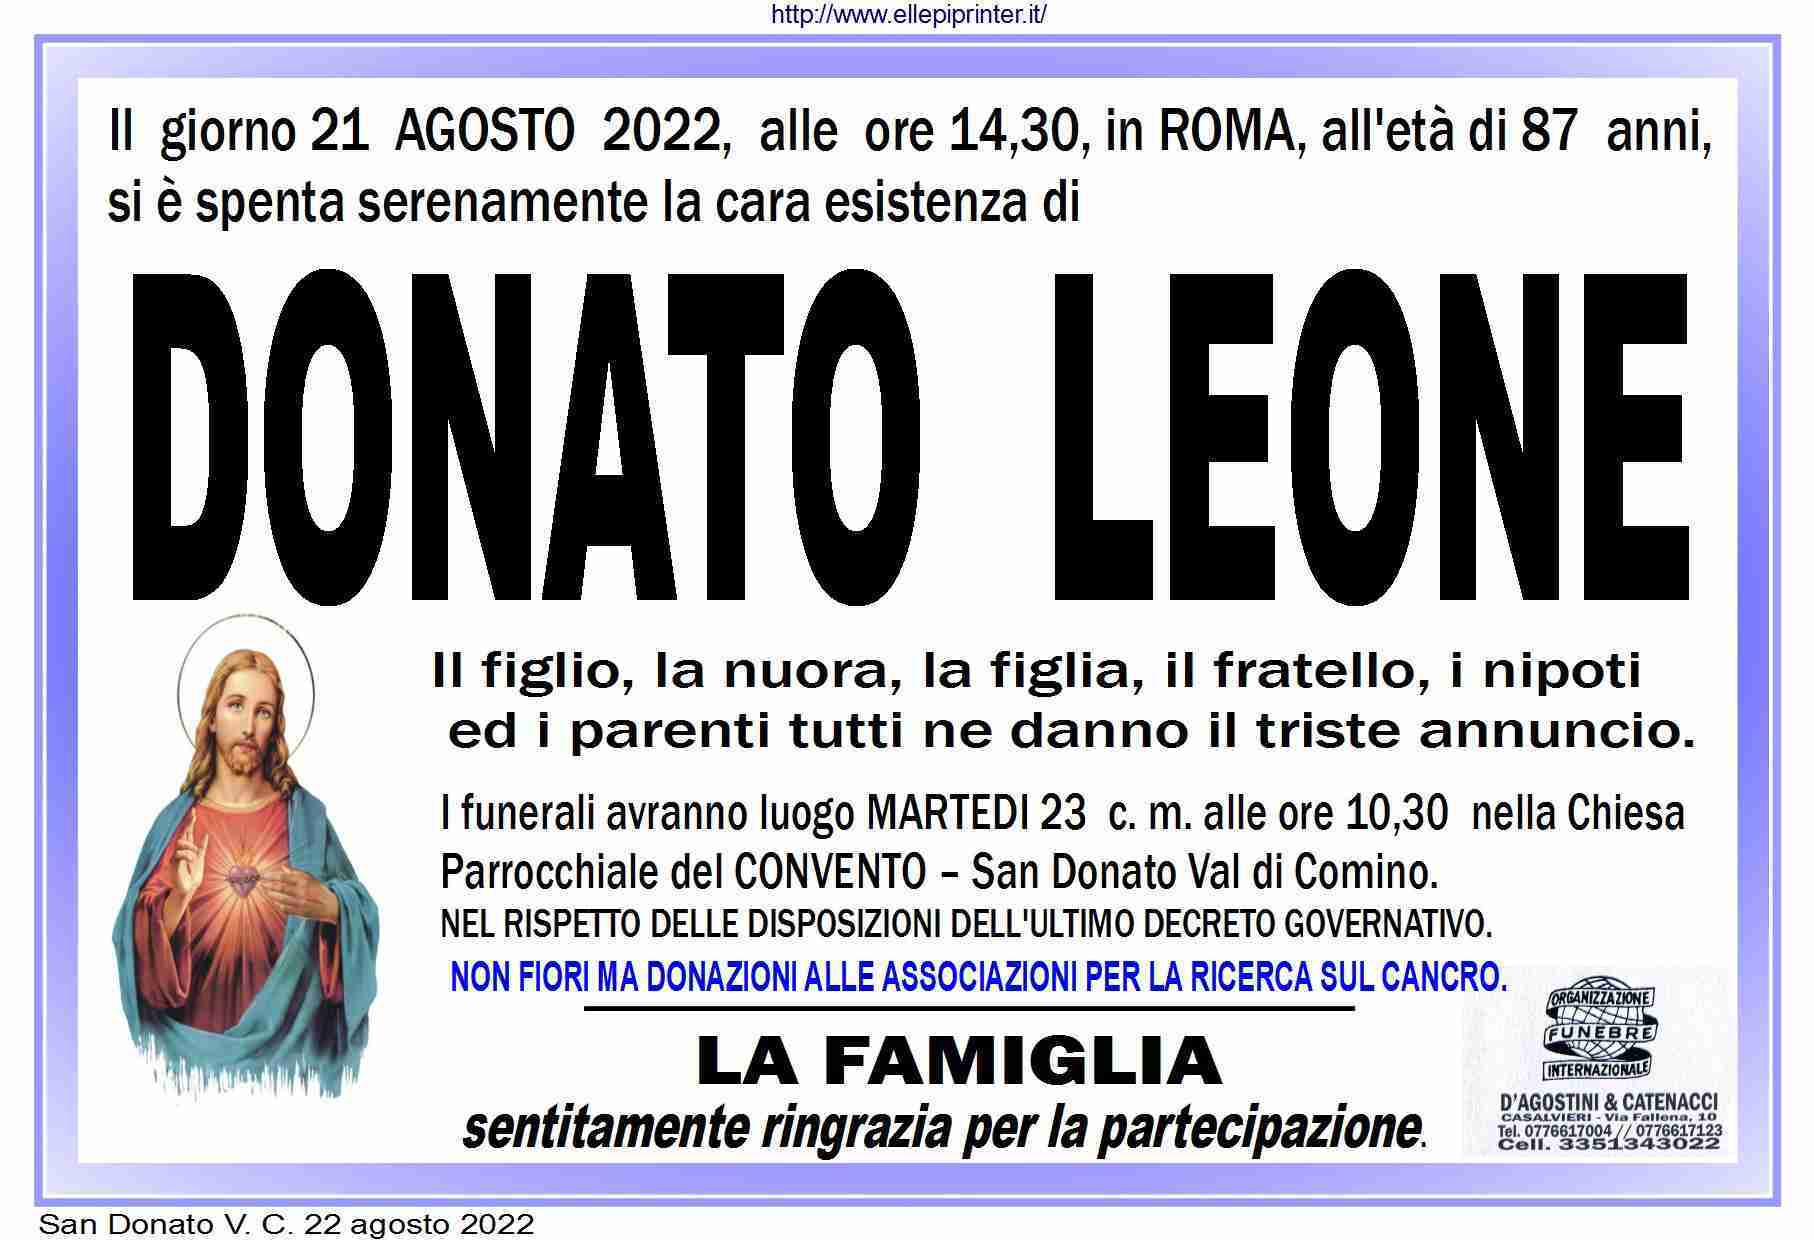 Donato Leone